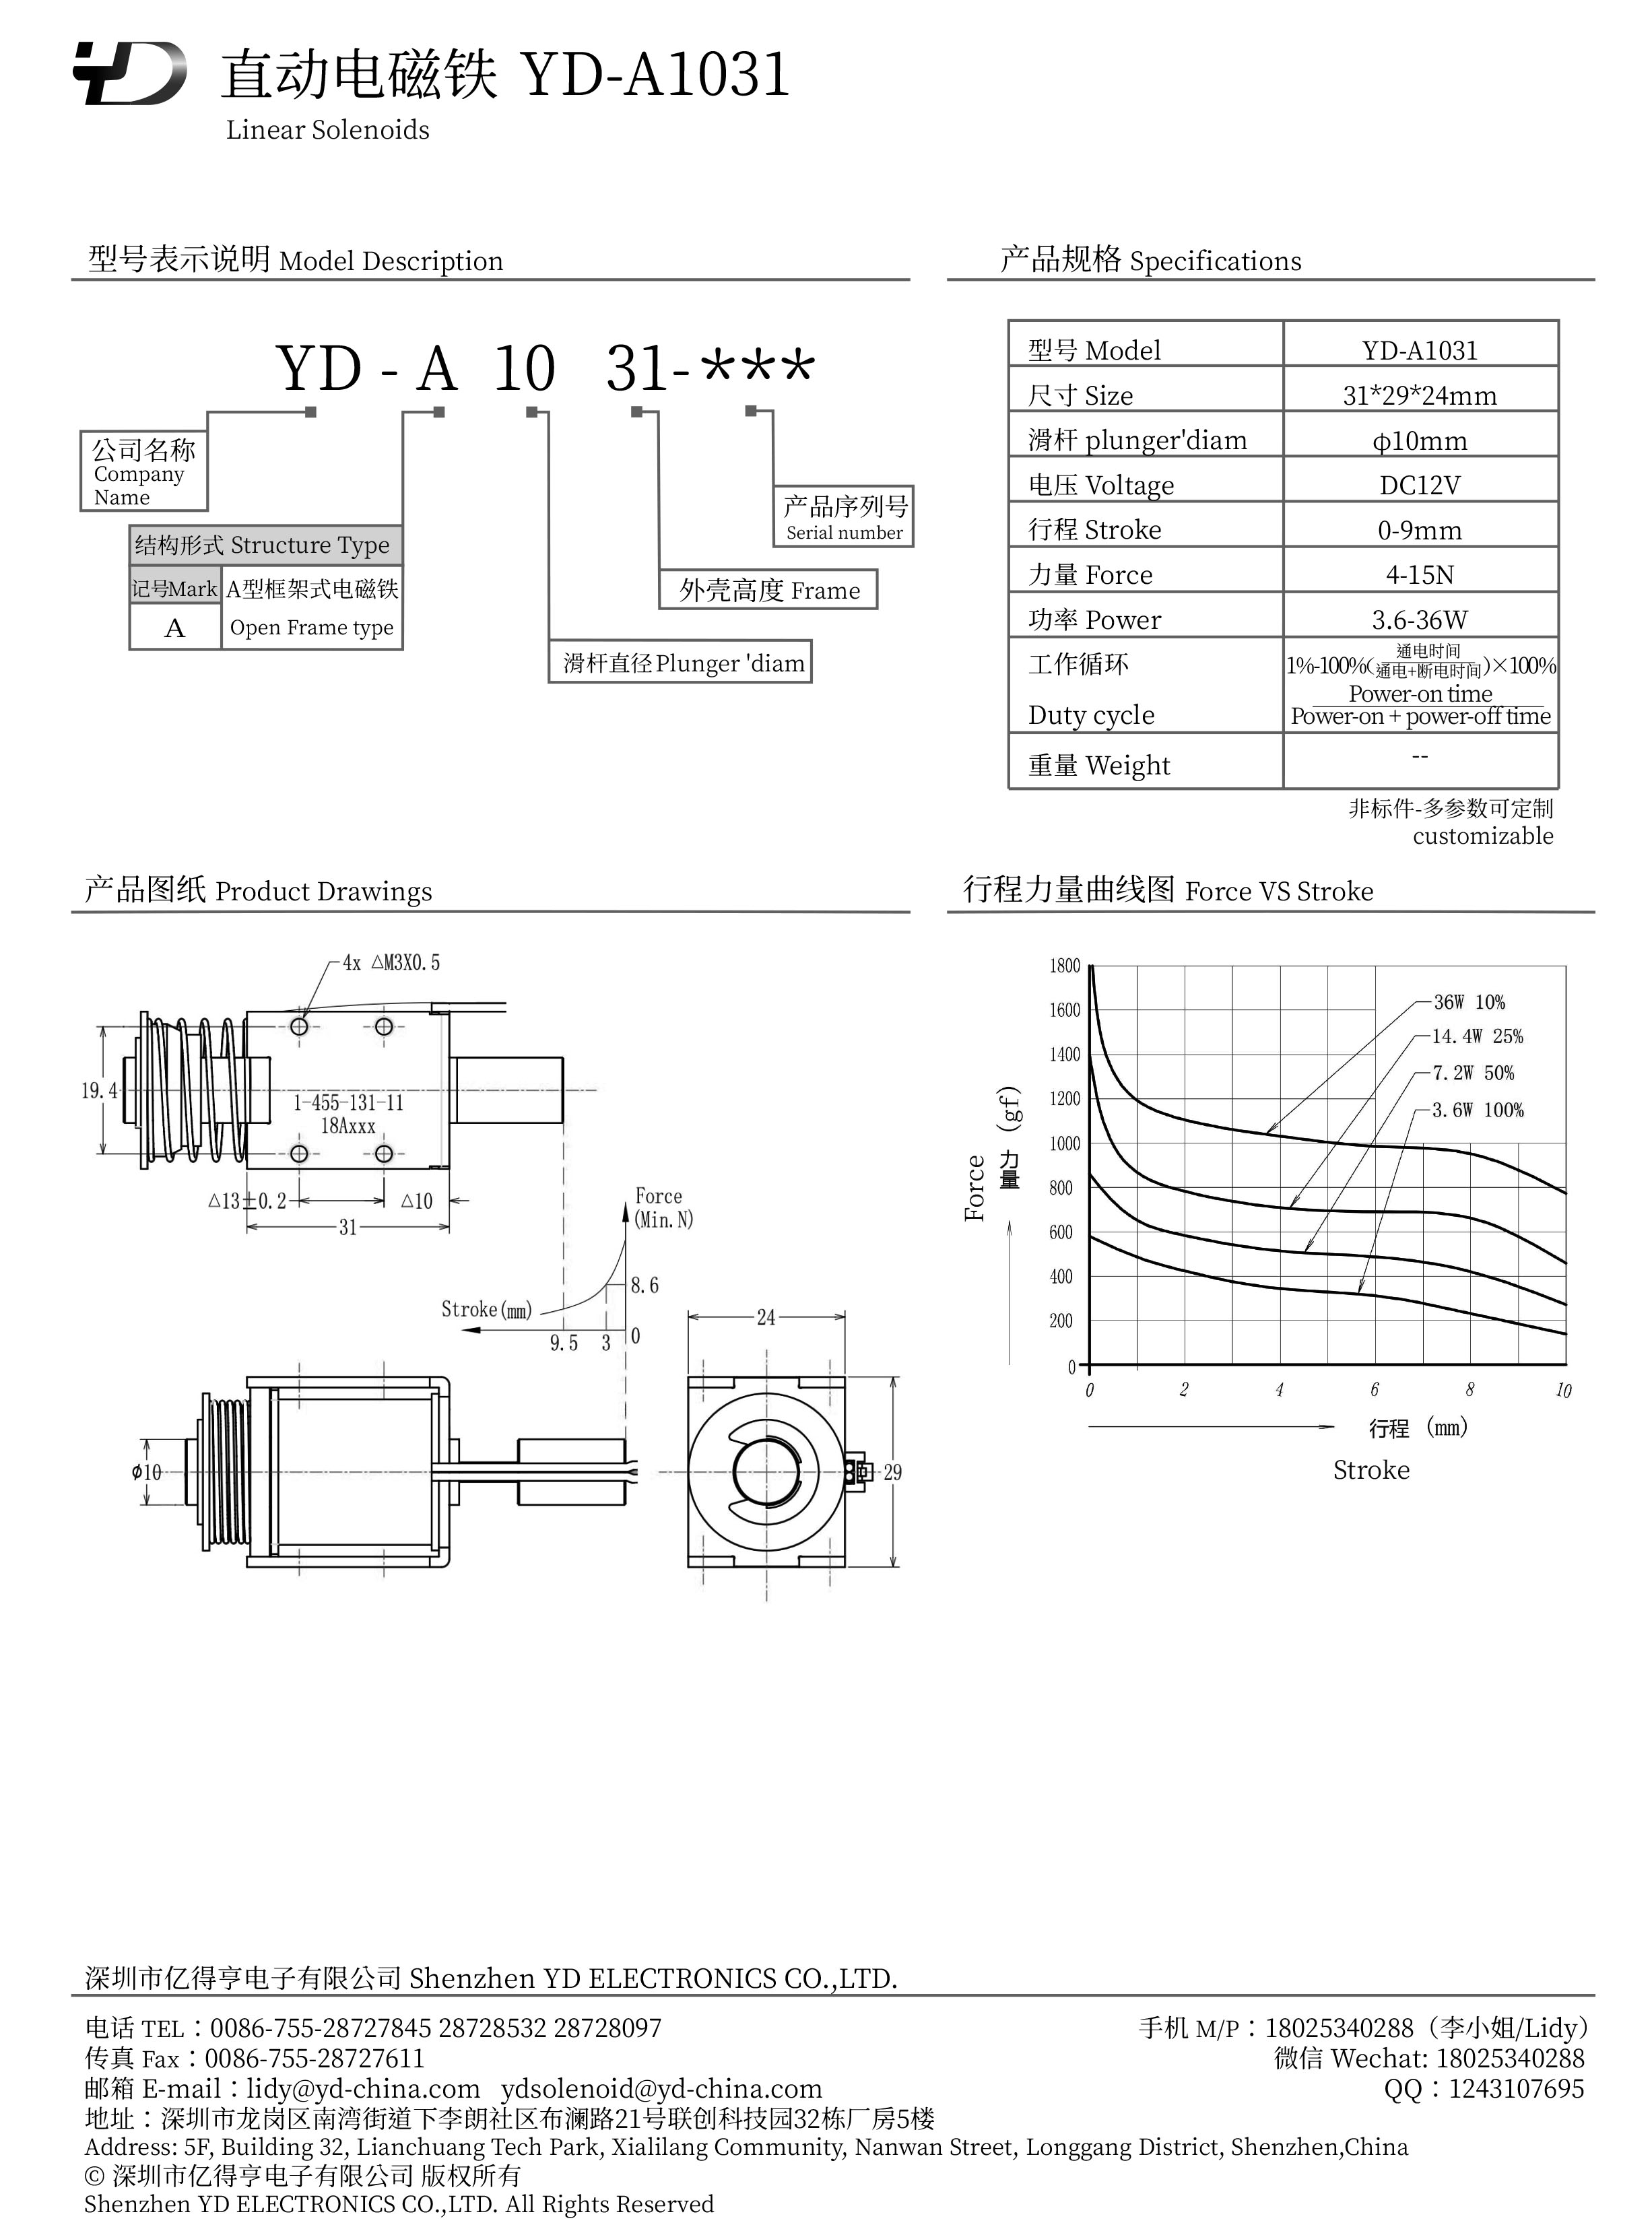 YD-A1031-PDF.jpg